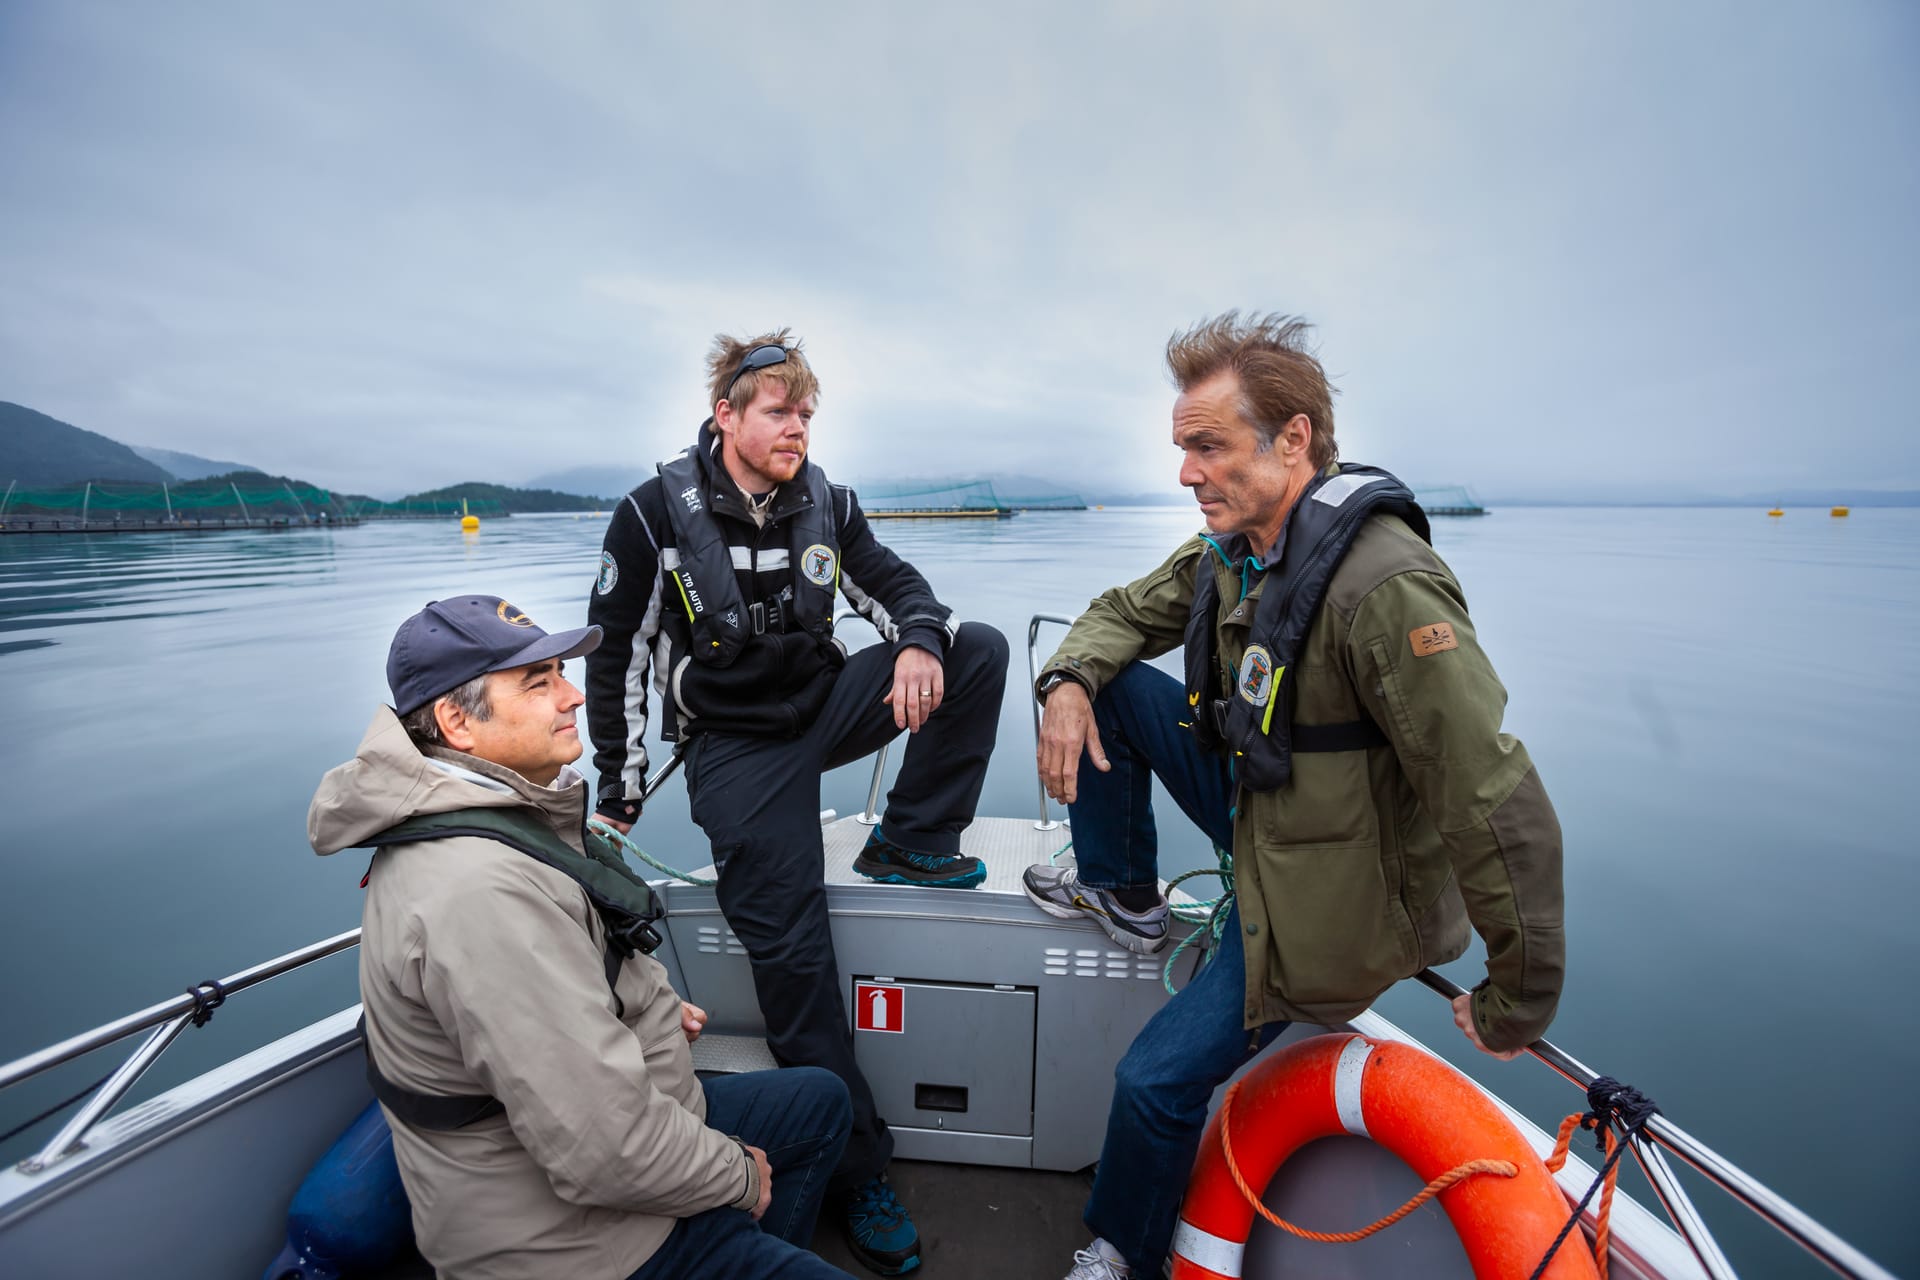 In Norwegen gibt es eine breite Front von Umwelt- und Naturschützern gegen die Zuchtlachsindustrie. Sie kämpfen für ein gesundes marines Ökosystem und wilde Lachse.